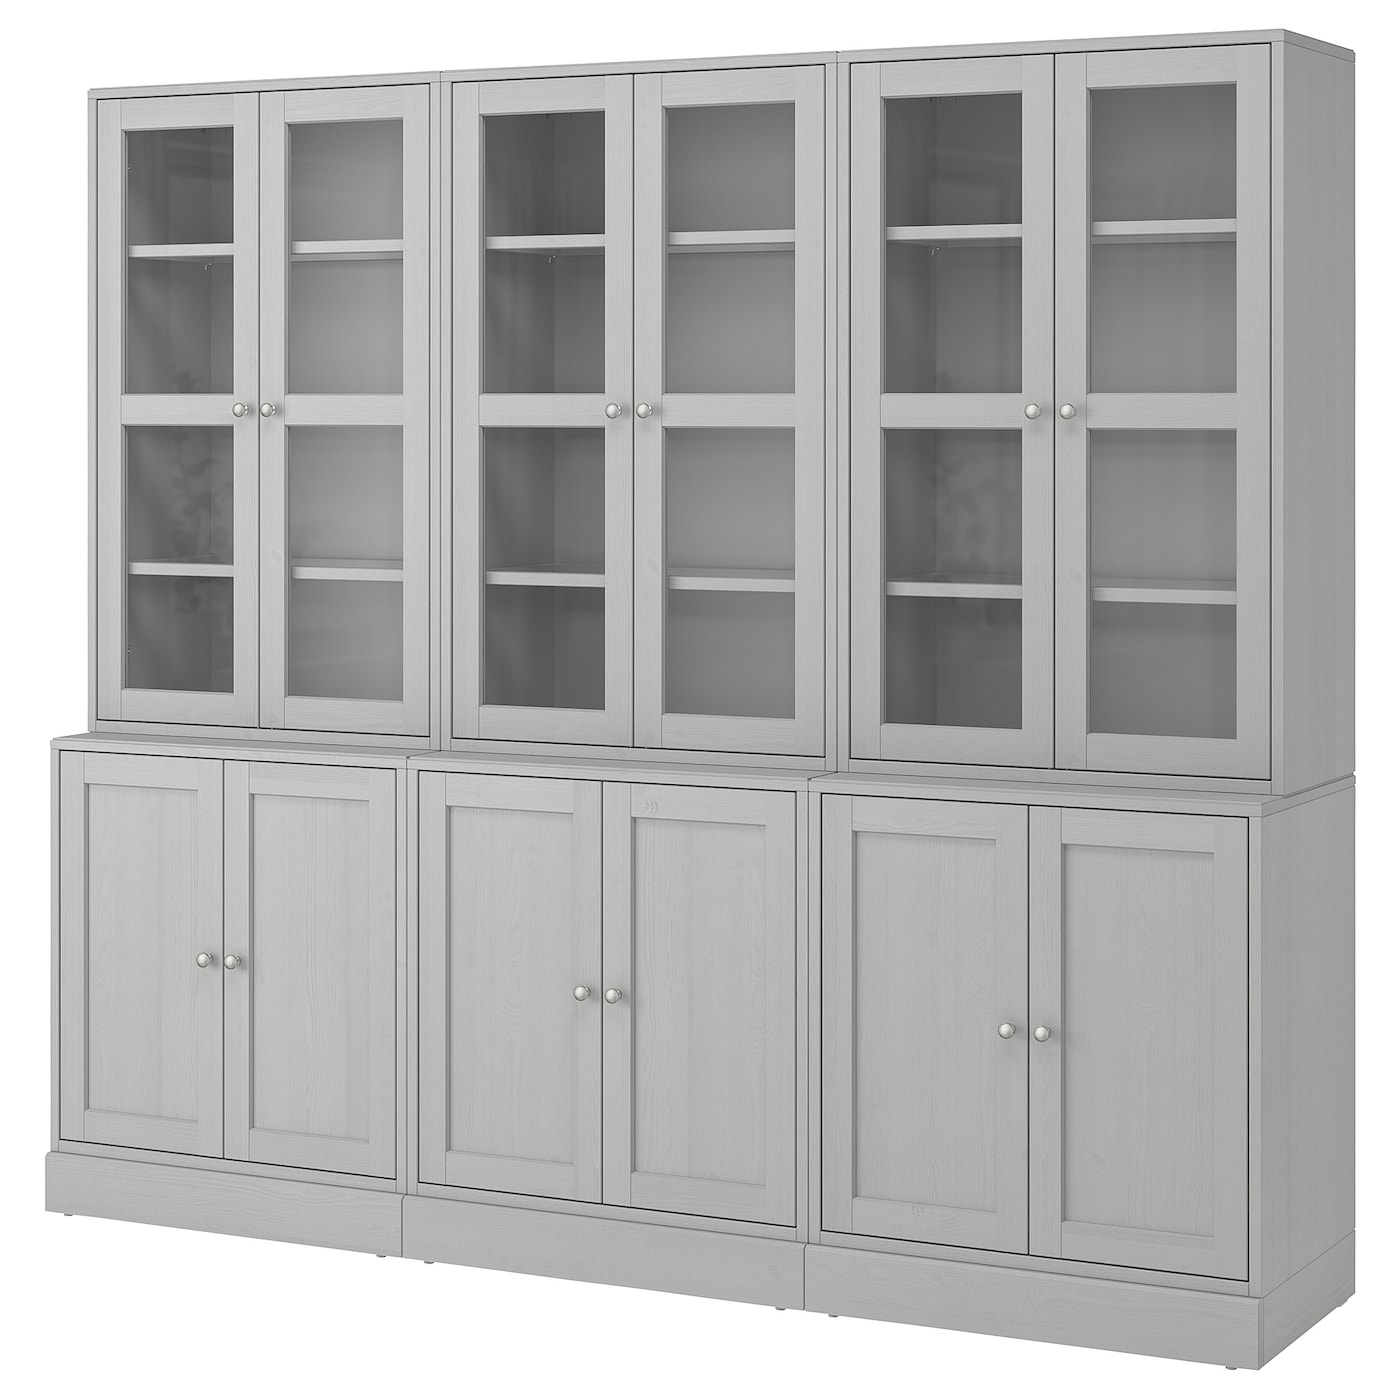 Шкаф со стеклянными дверцами- HAVSTA IKEA/ ХАВСТА ИКЕА, 243x212x47 см, серый